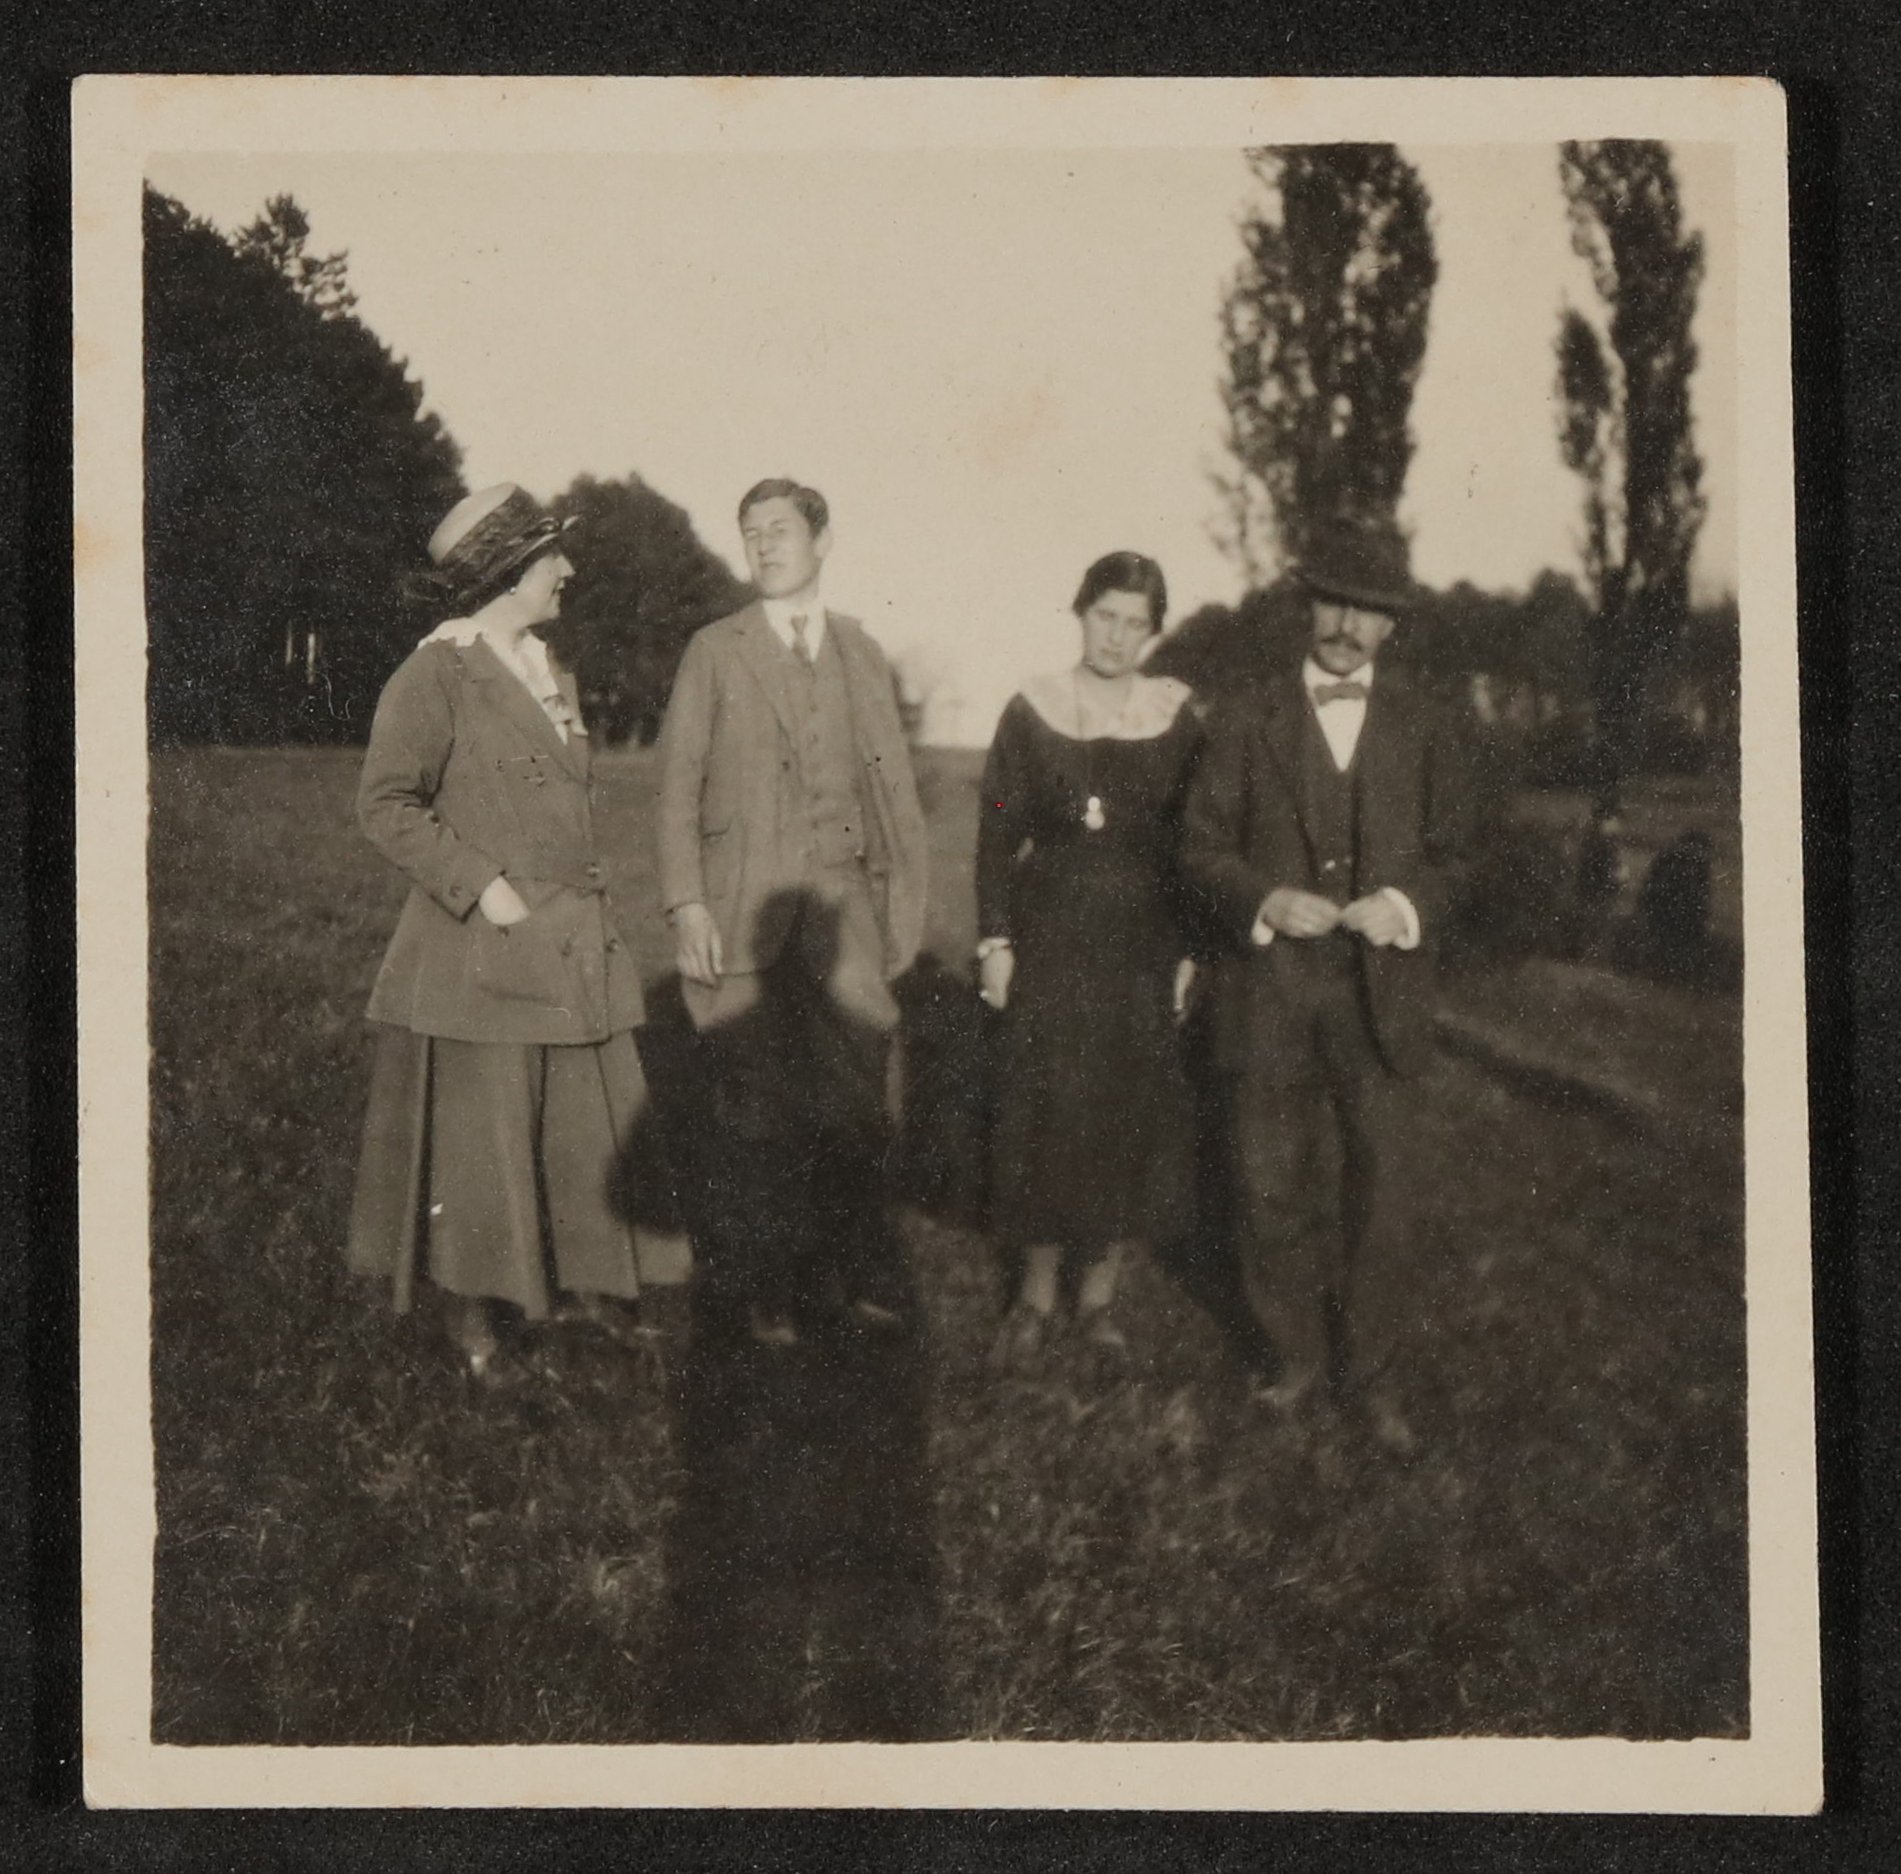 Familie Hofmannsthal (Gerty, Raimund, Christiane und Hugo) auf einer Wiese stehend (Freies Deutsches Hochstift / Frankfurter Goethe-Museum CC BY-NC-SA)